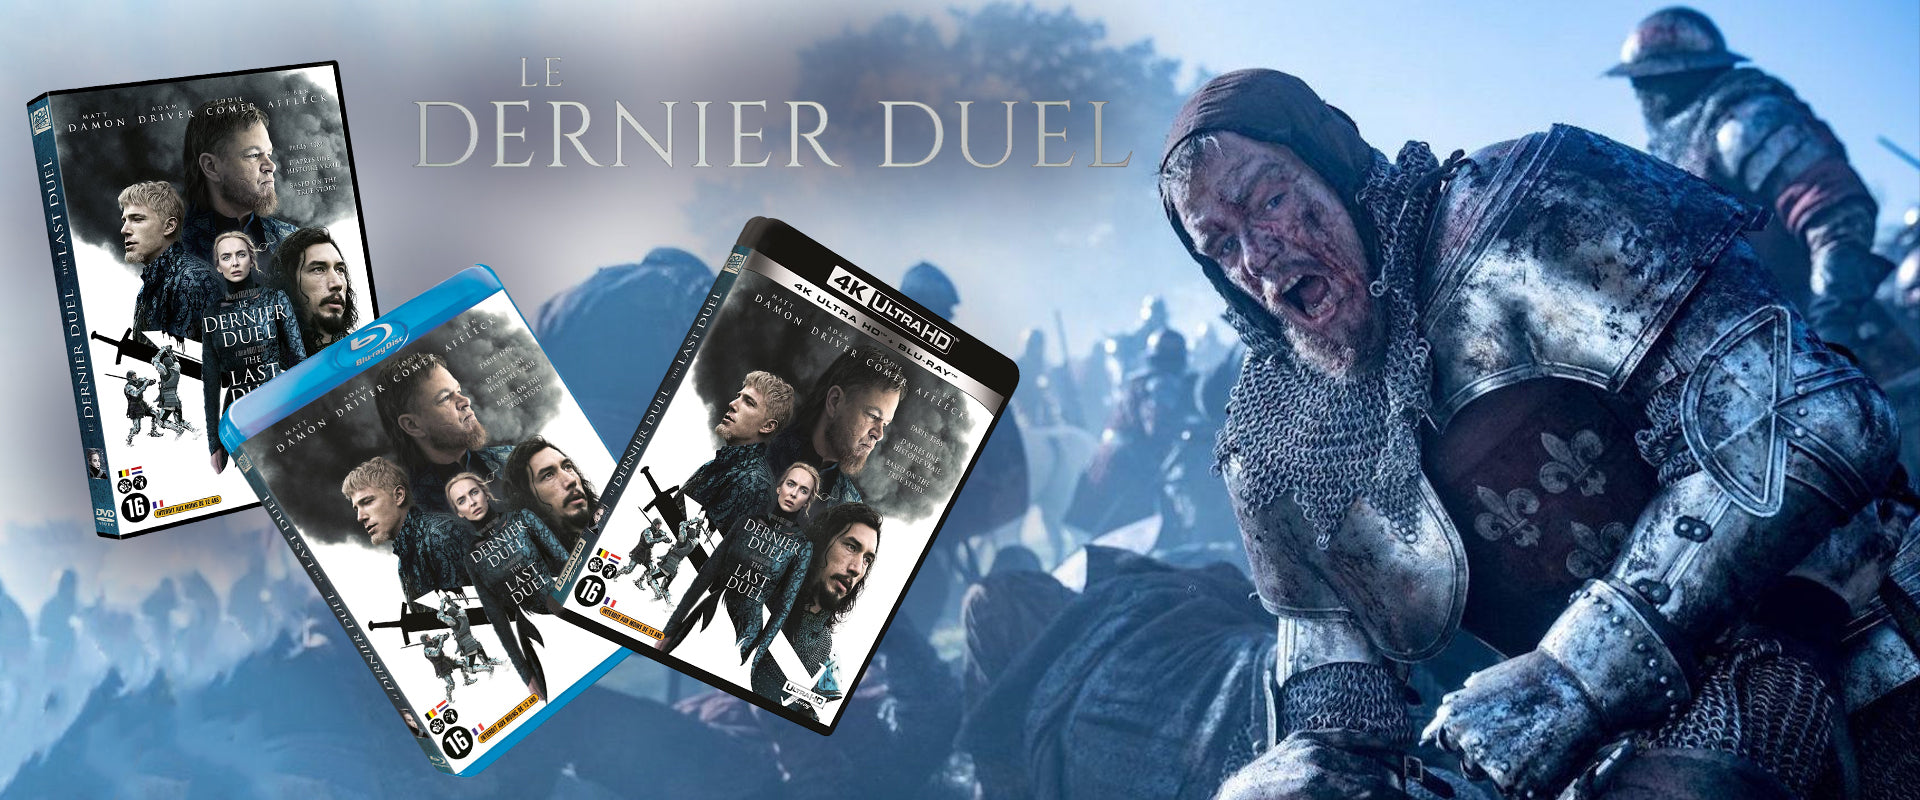 Le dernier duel en DVD, Blu-ray, 4K HD